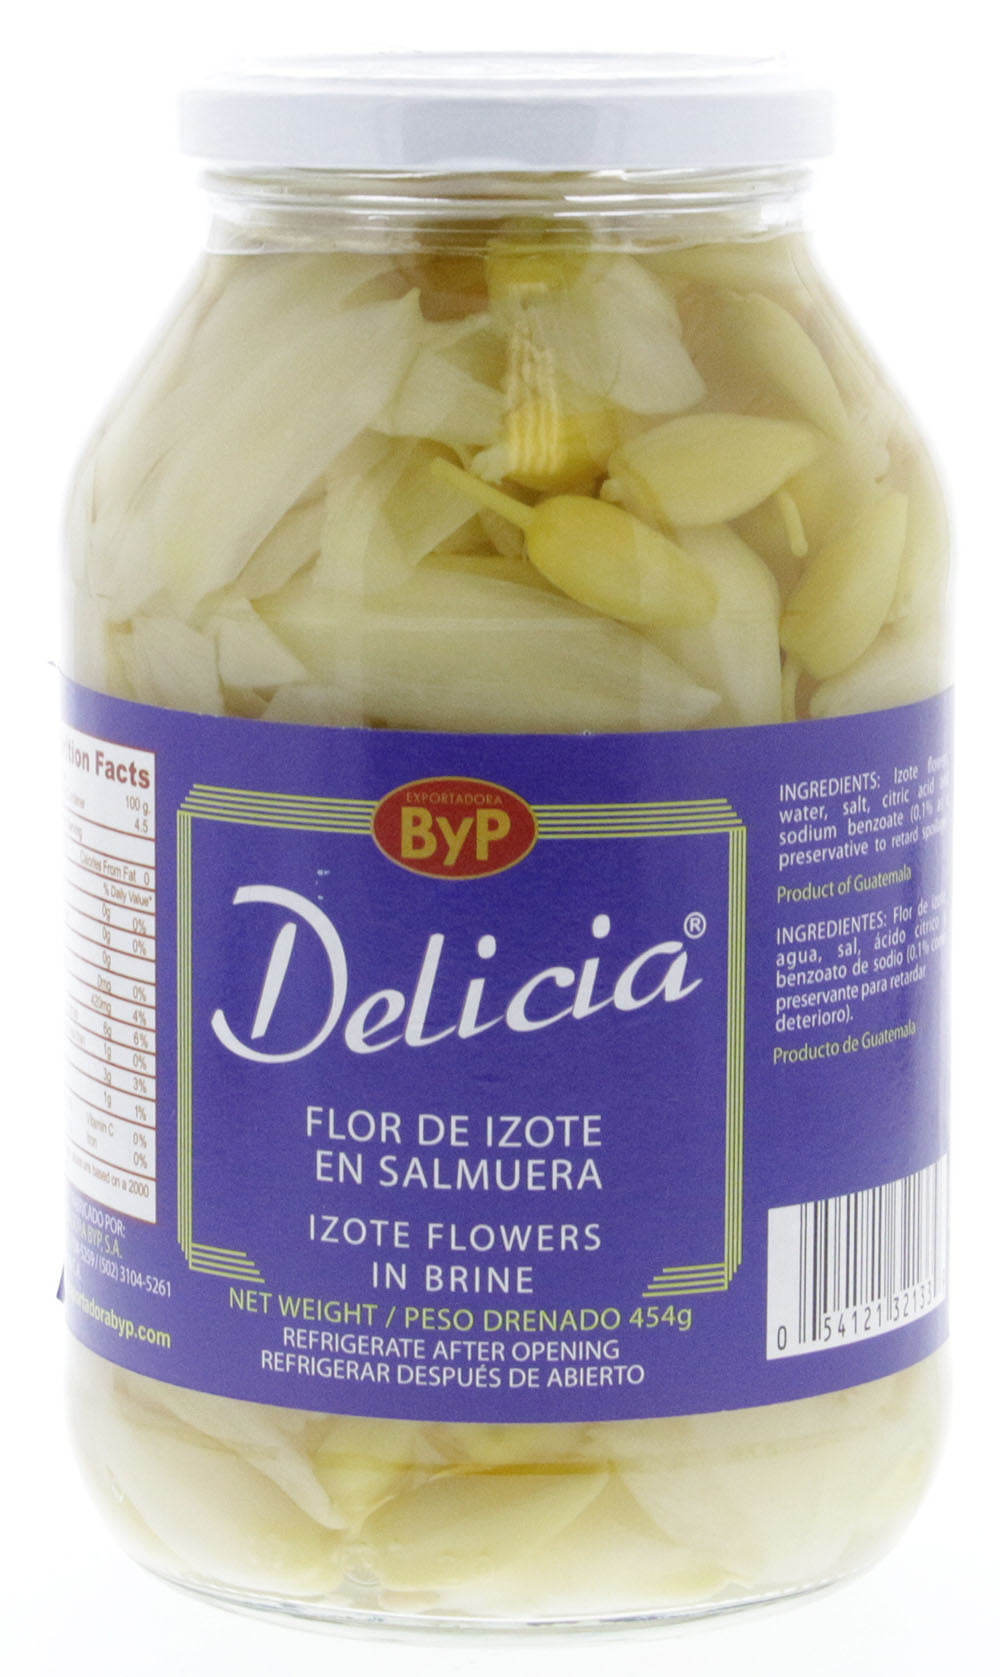 Delicias Flower Izote Flor De